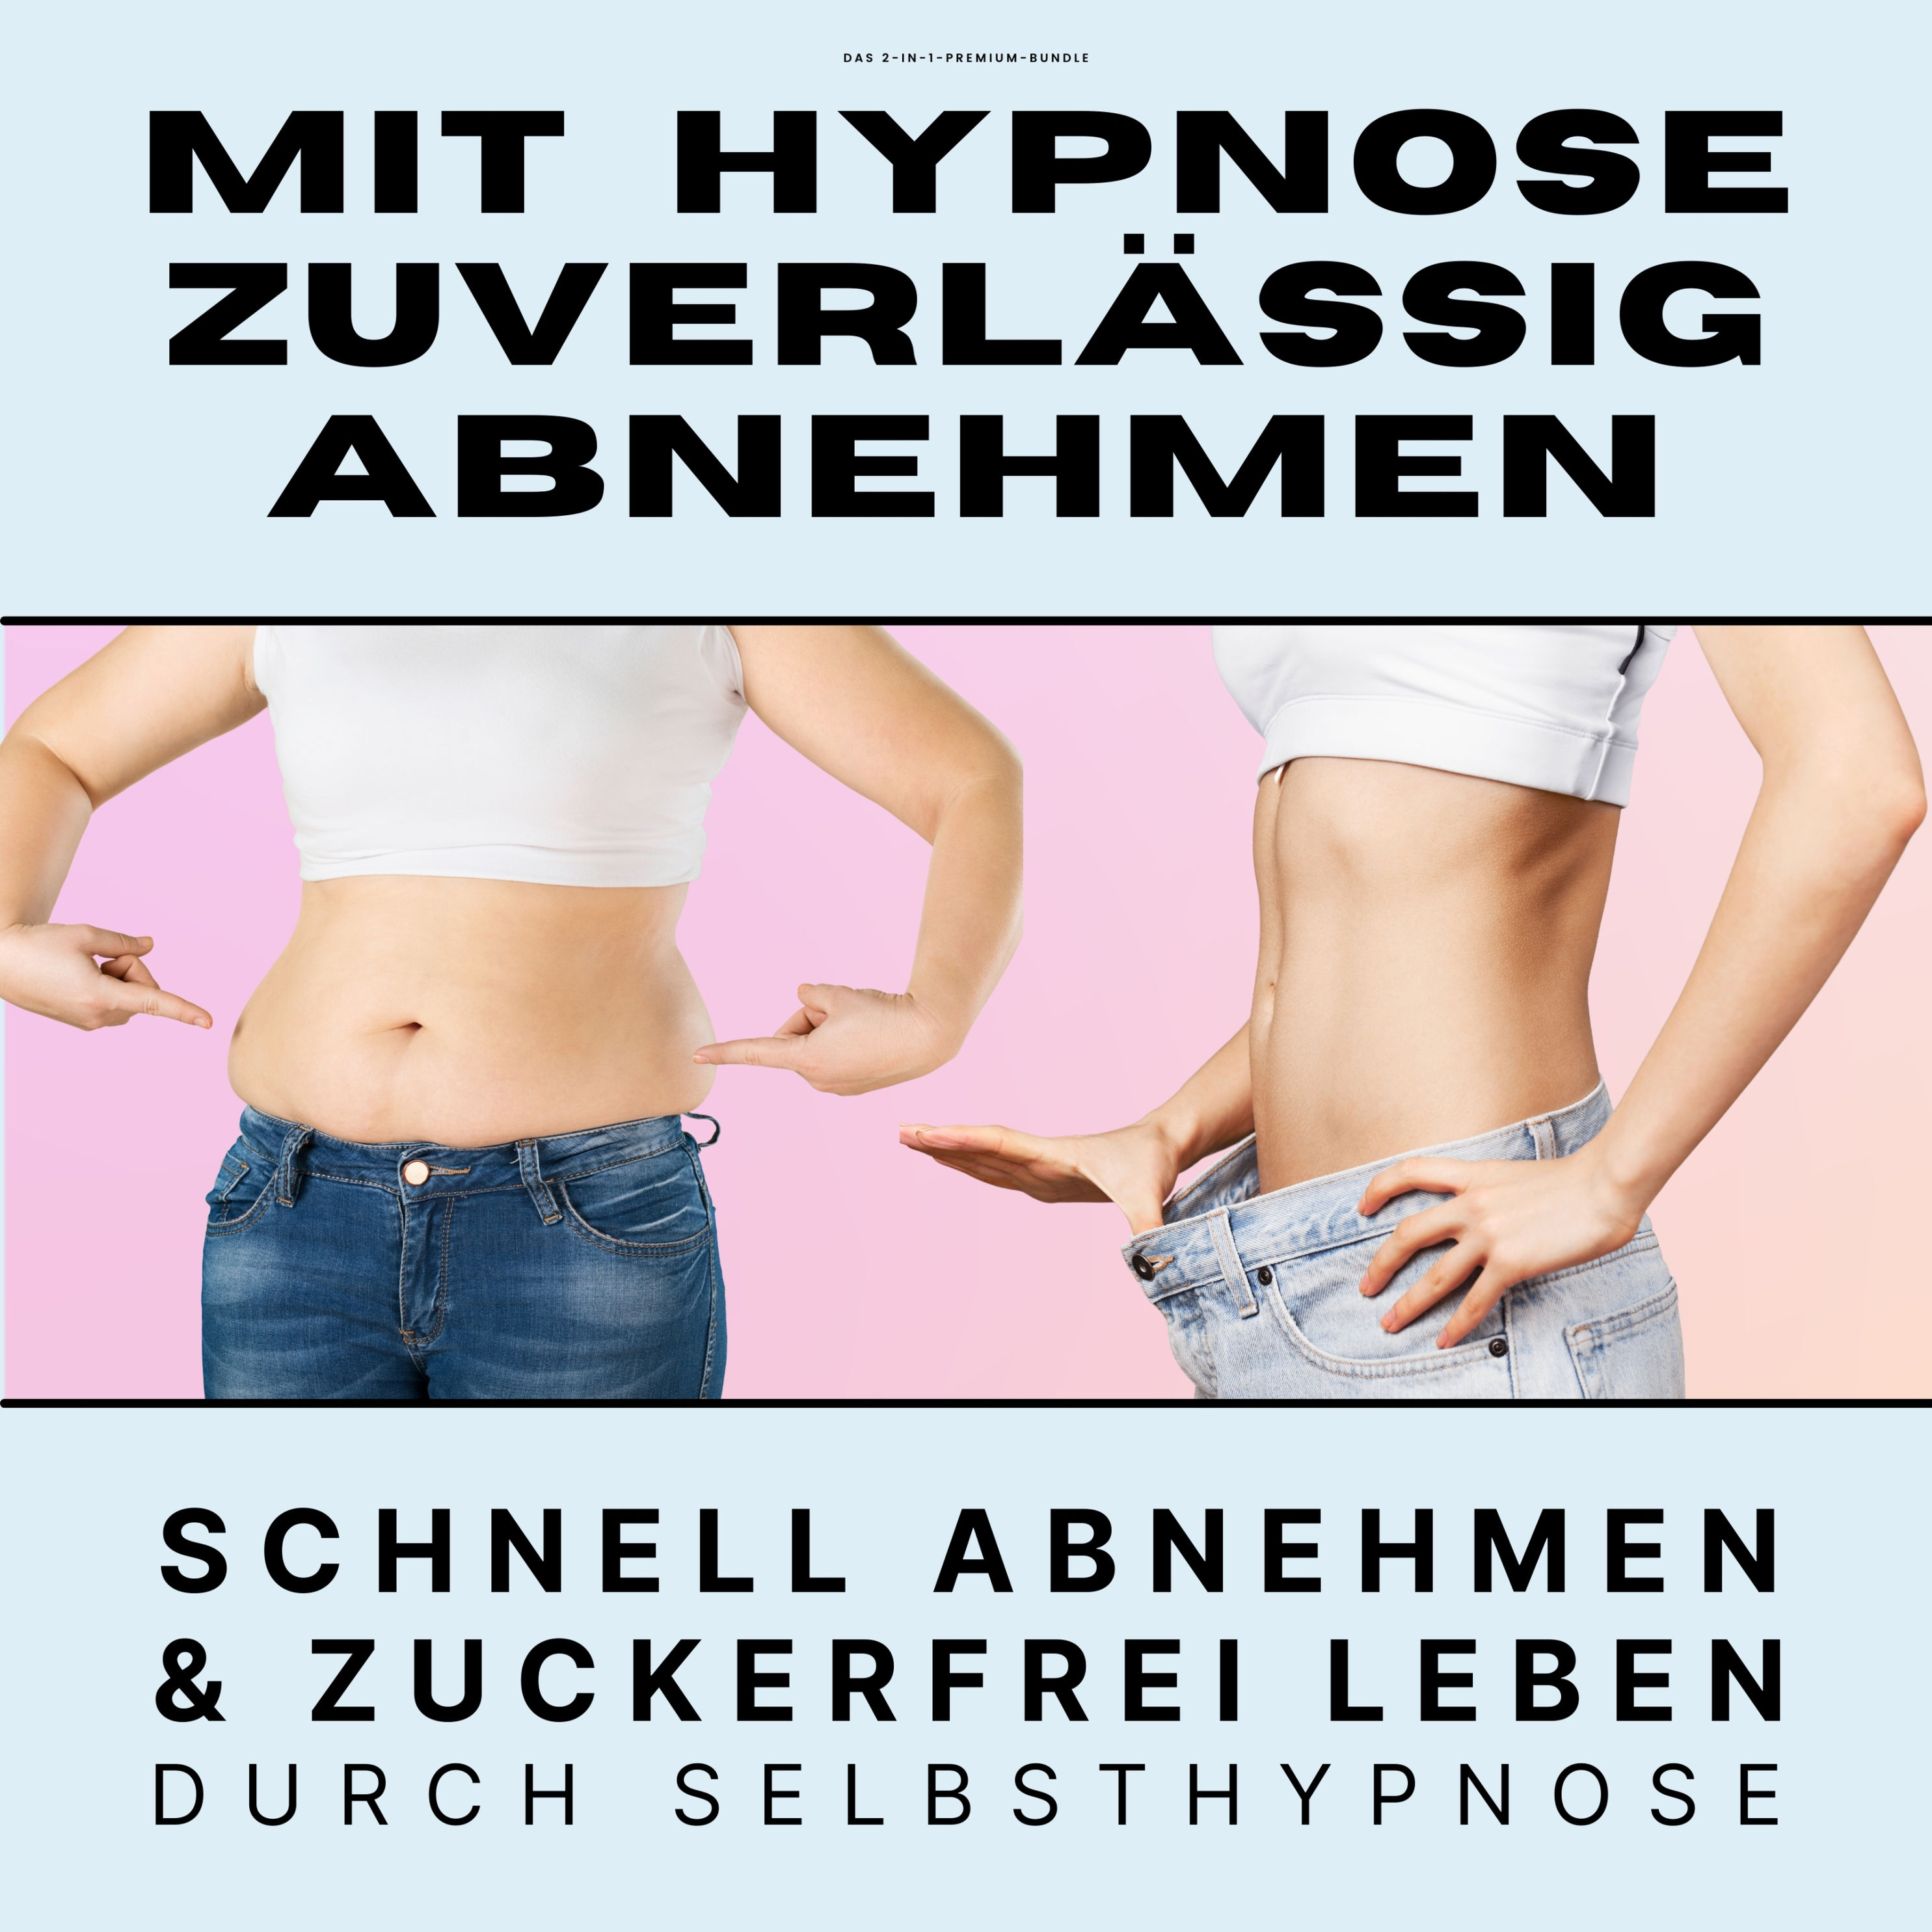 Mit Hypnose zuverlässig abnehmen: Premium-Bundle Hörbuch Download